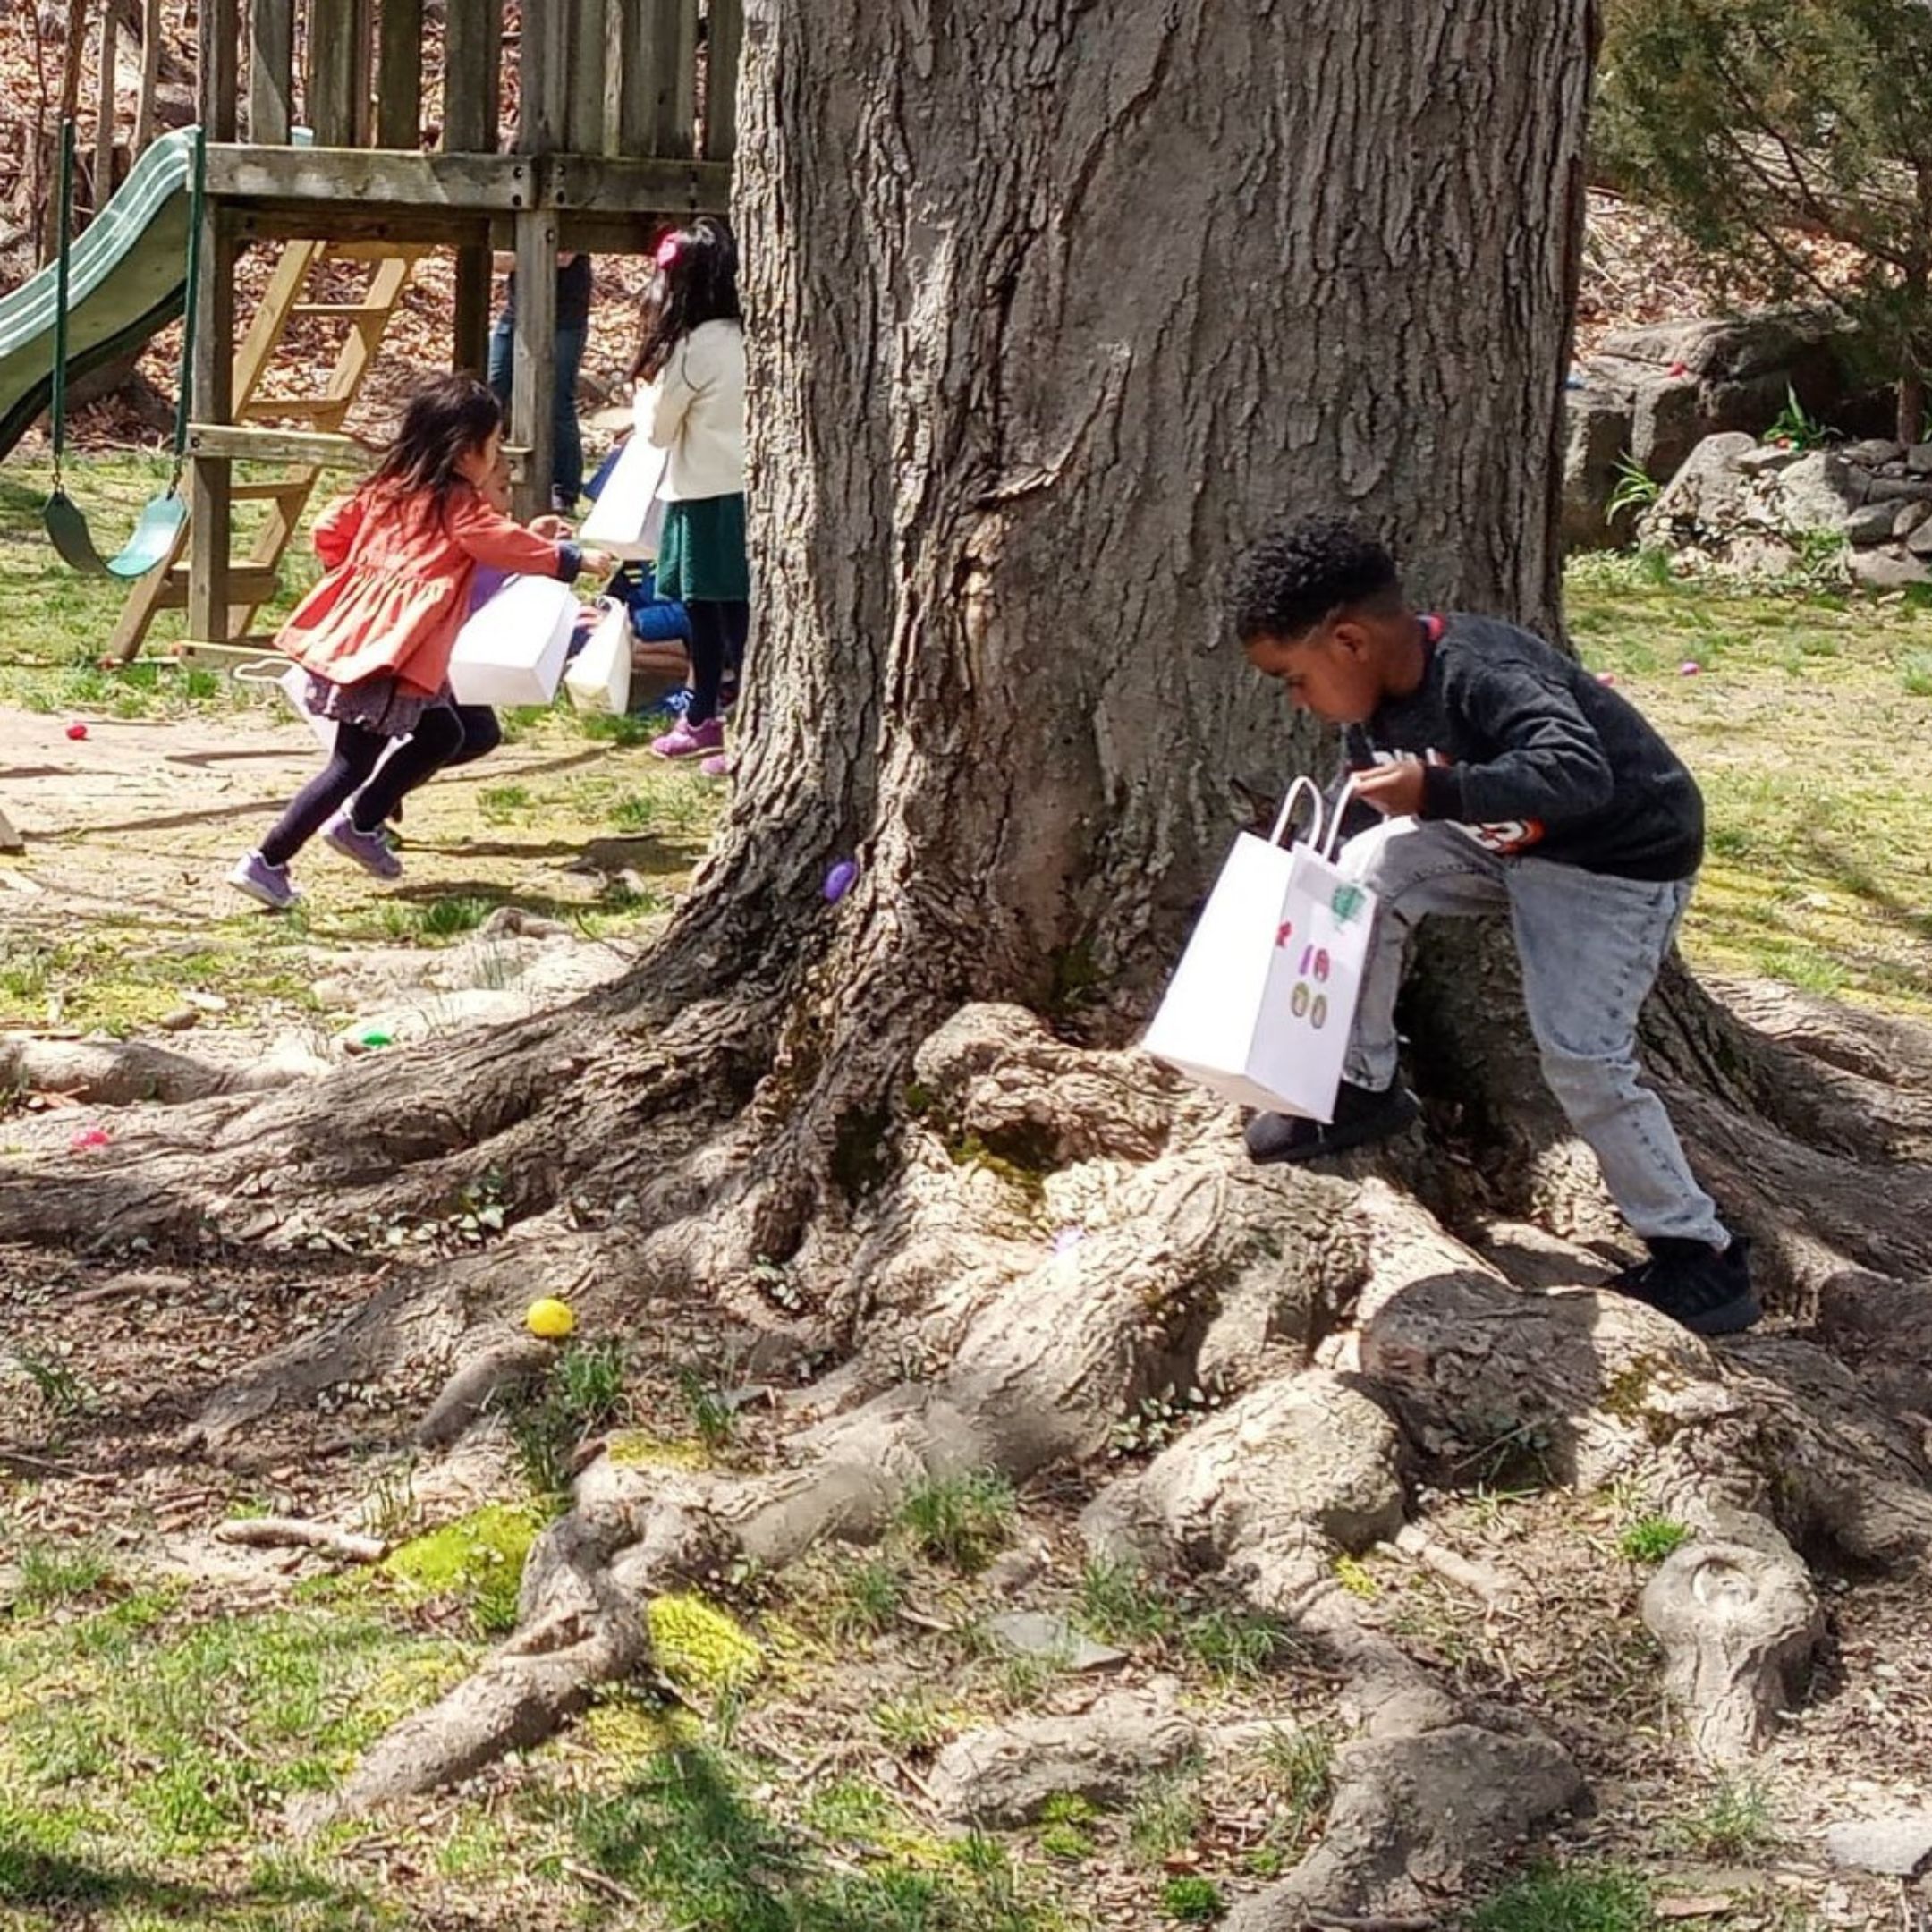 Kids hunting for Easter eggs on Easter Sunday